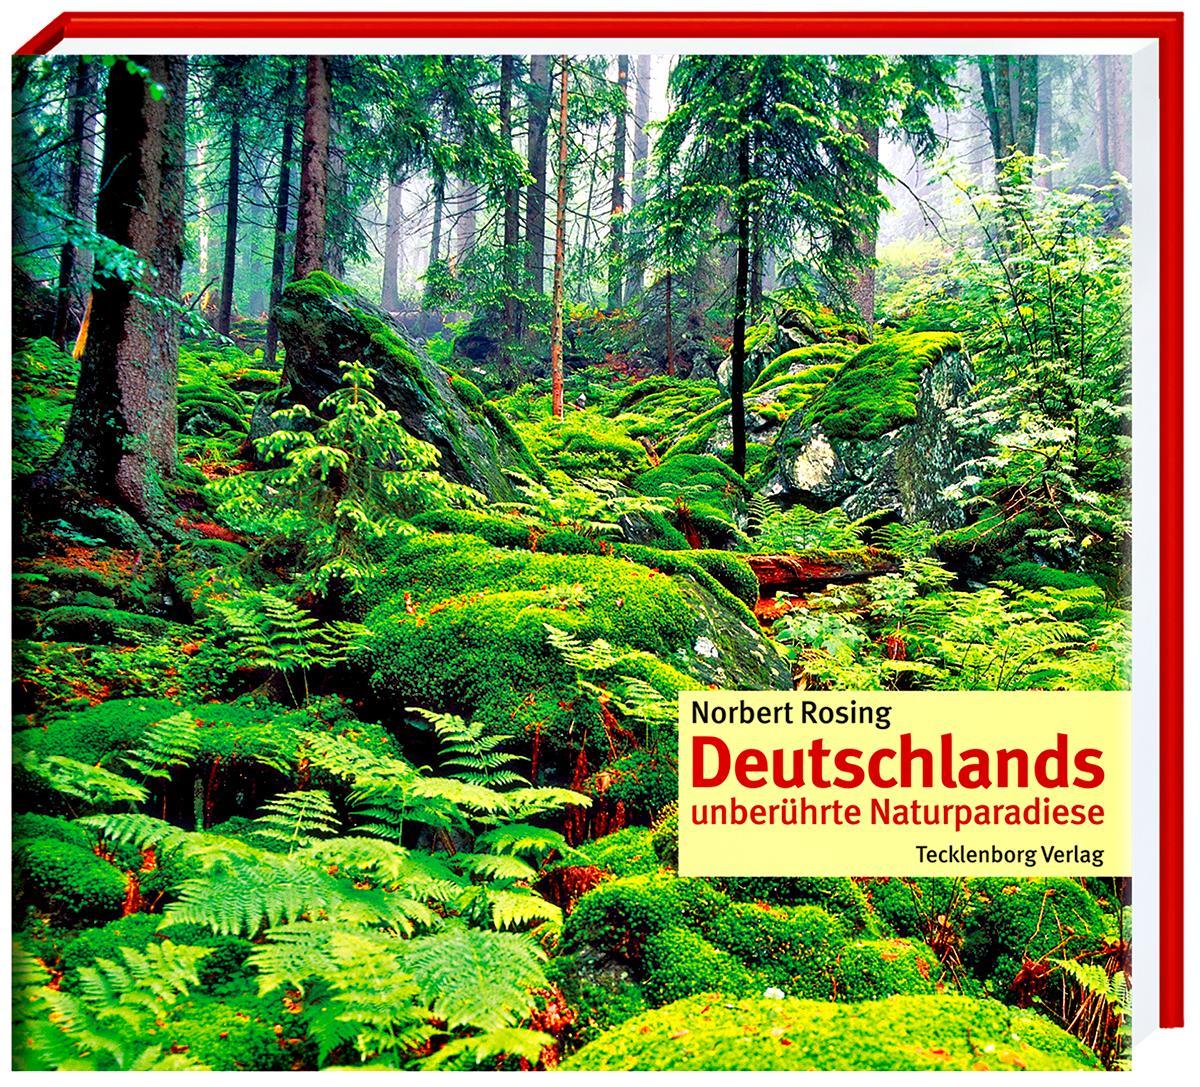 Deutschlands unberührte Naturparadiese, Norbert Rosing - Bild 1 von 1